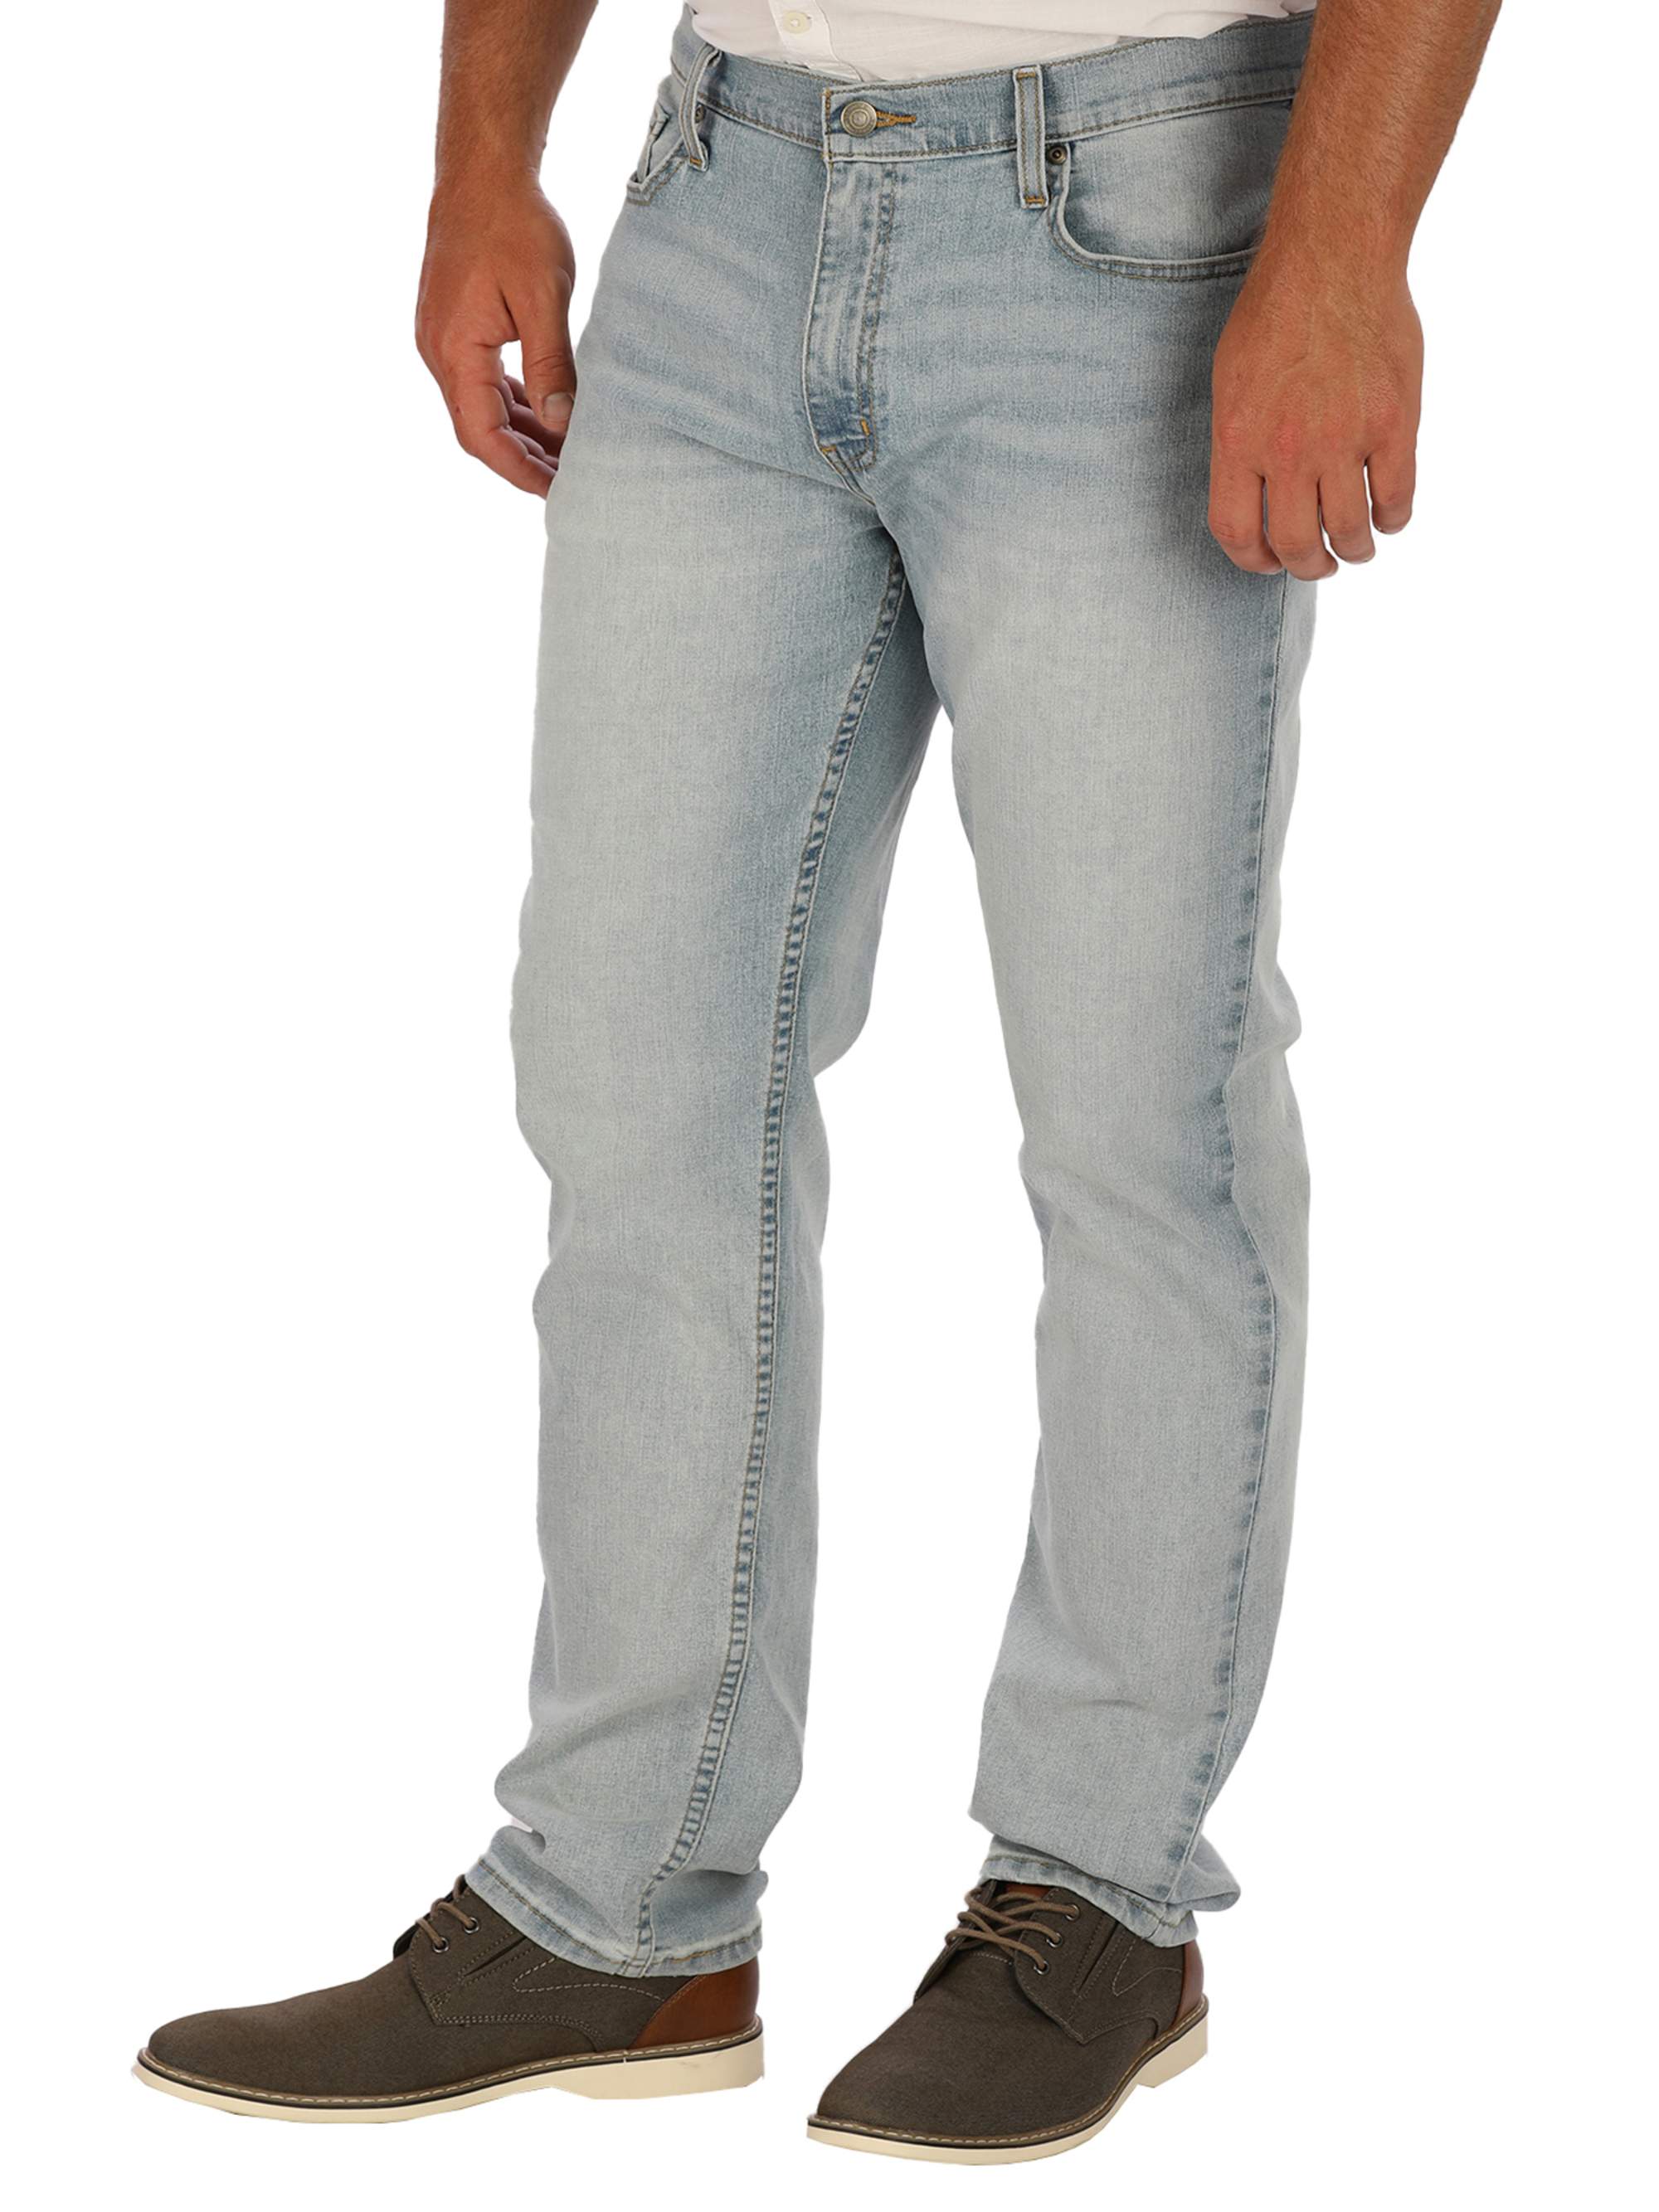 George Men's Slim Fit Jeans - image 1 of 6